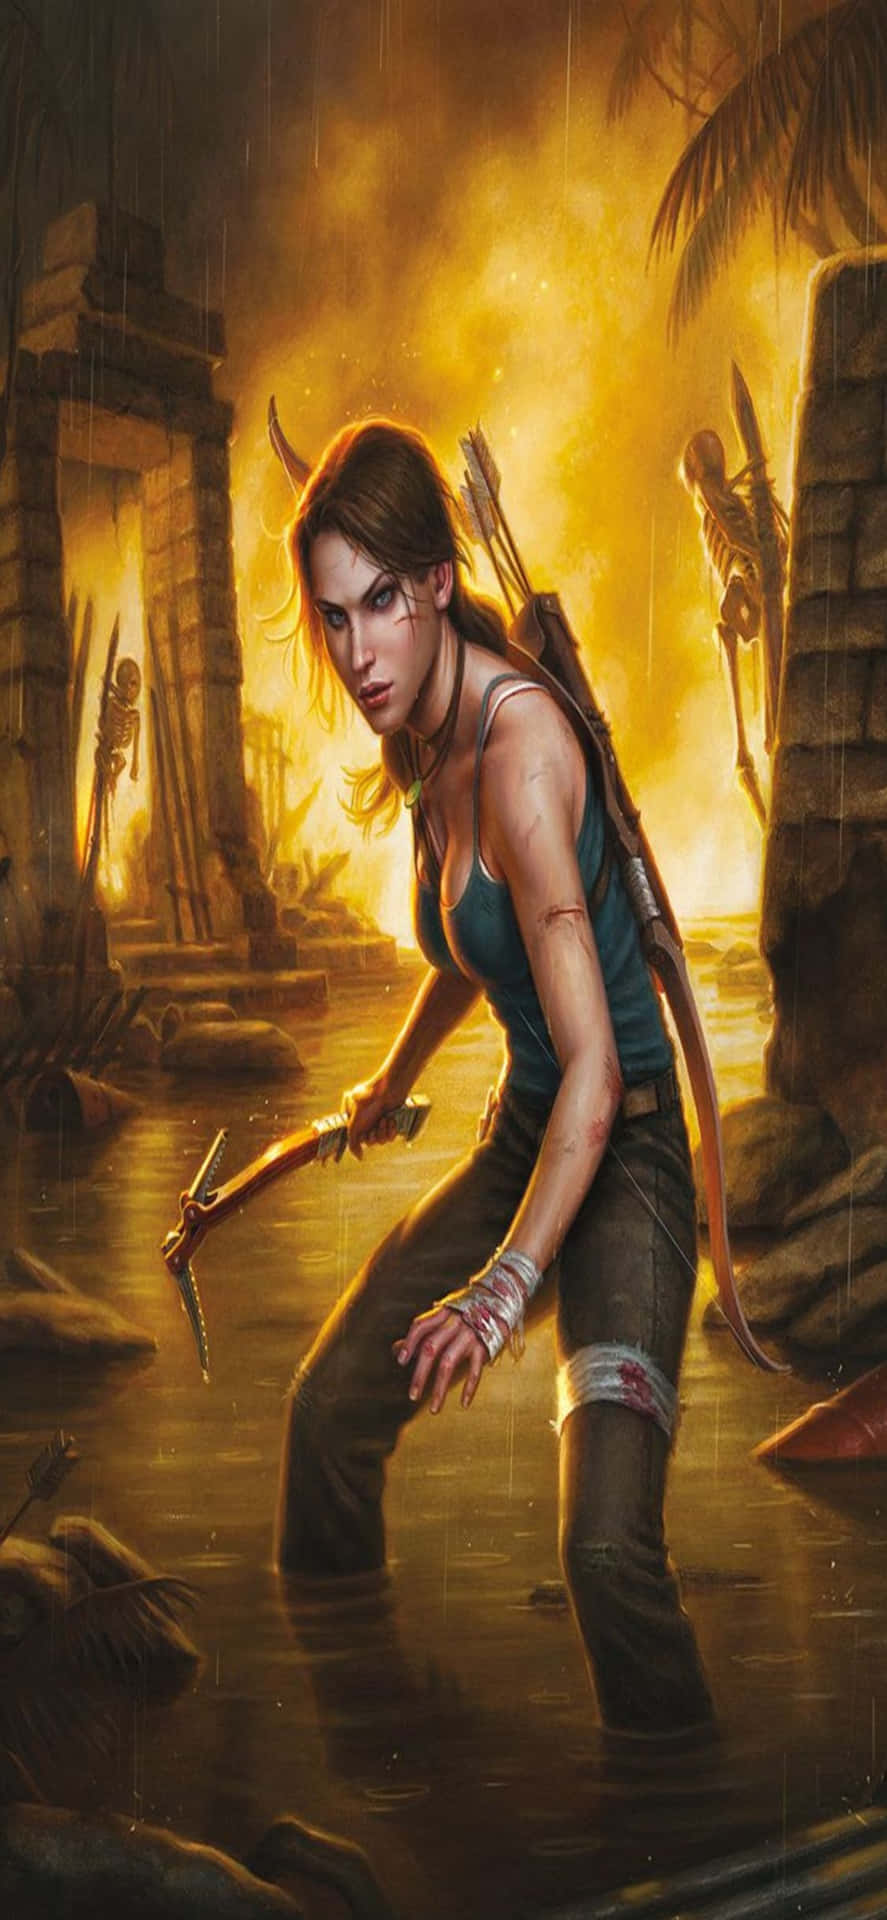 Udforskden Spændende Verden Af Rise Of The Tomb Raider På Iphone X.